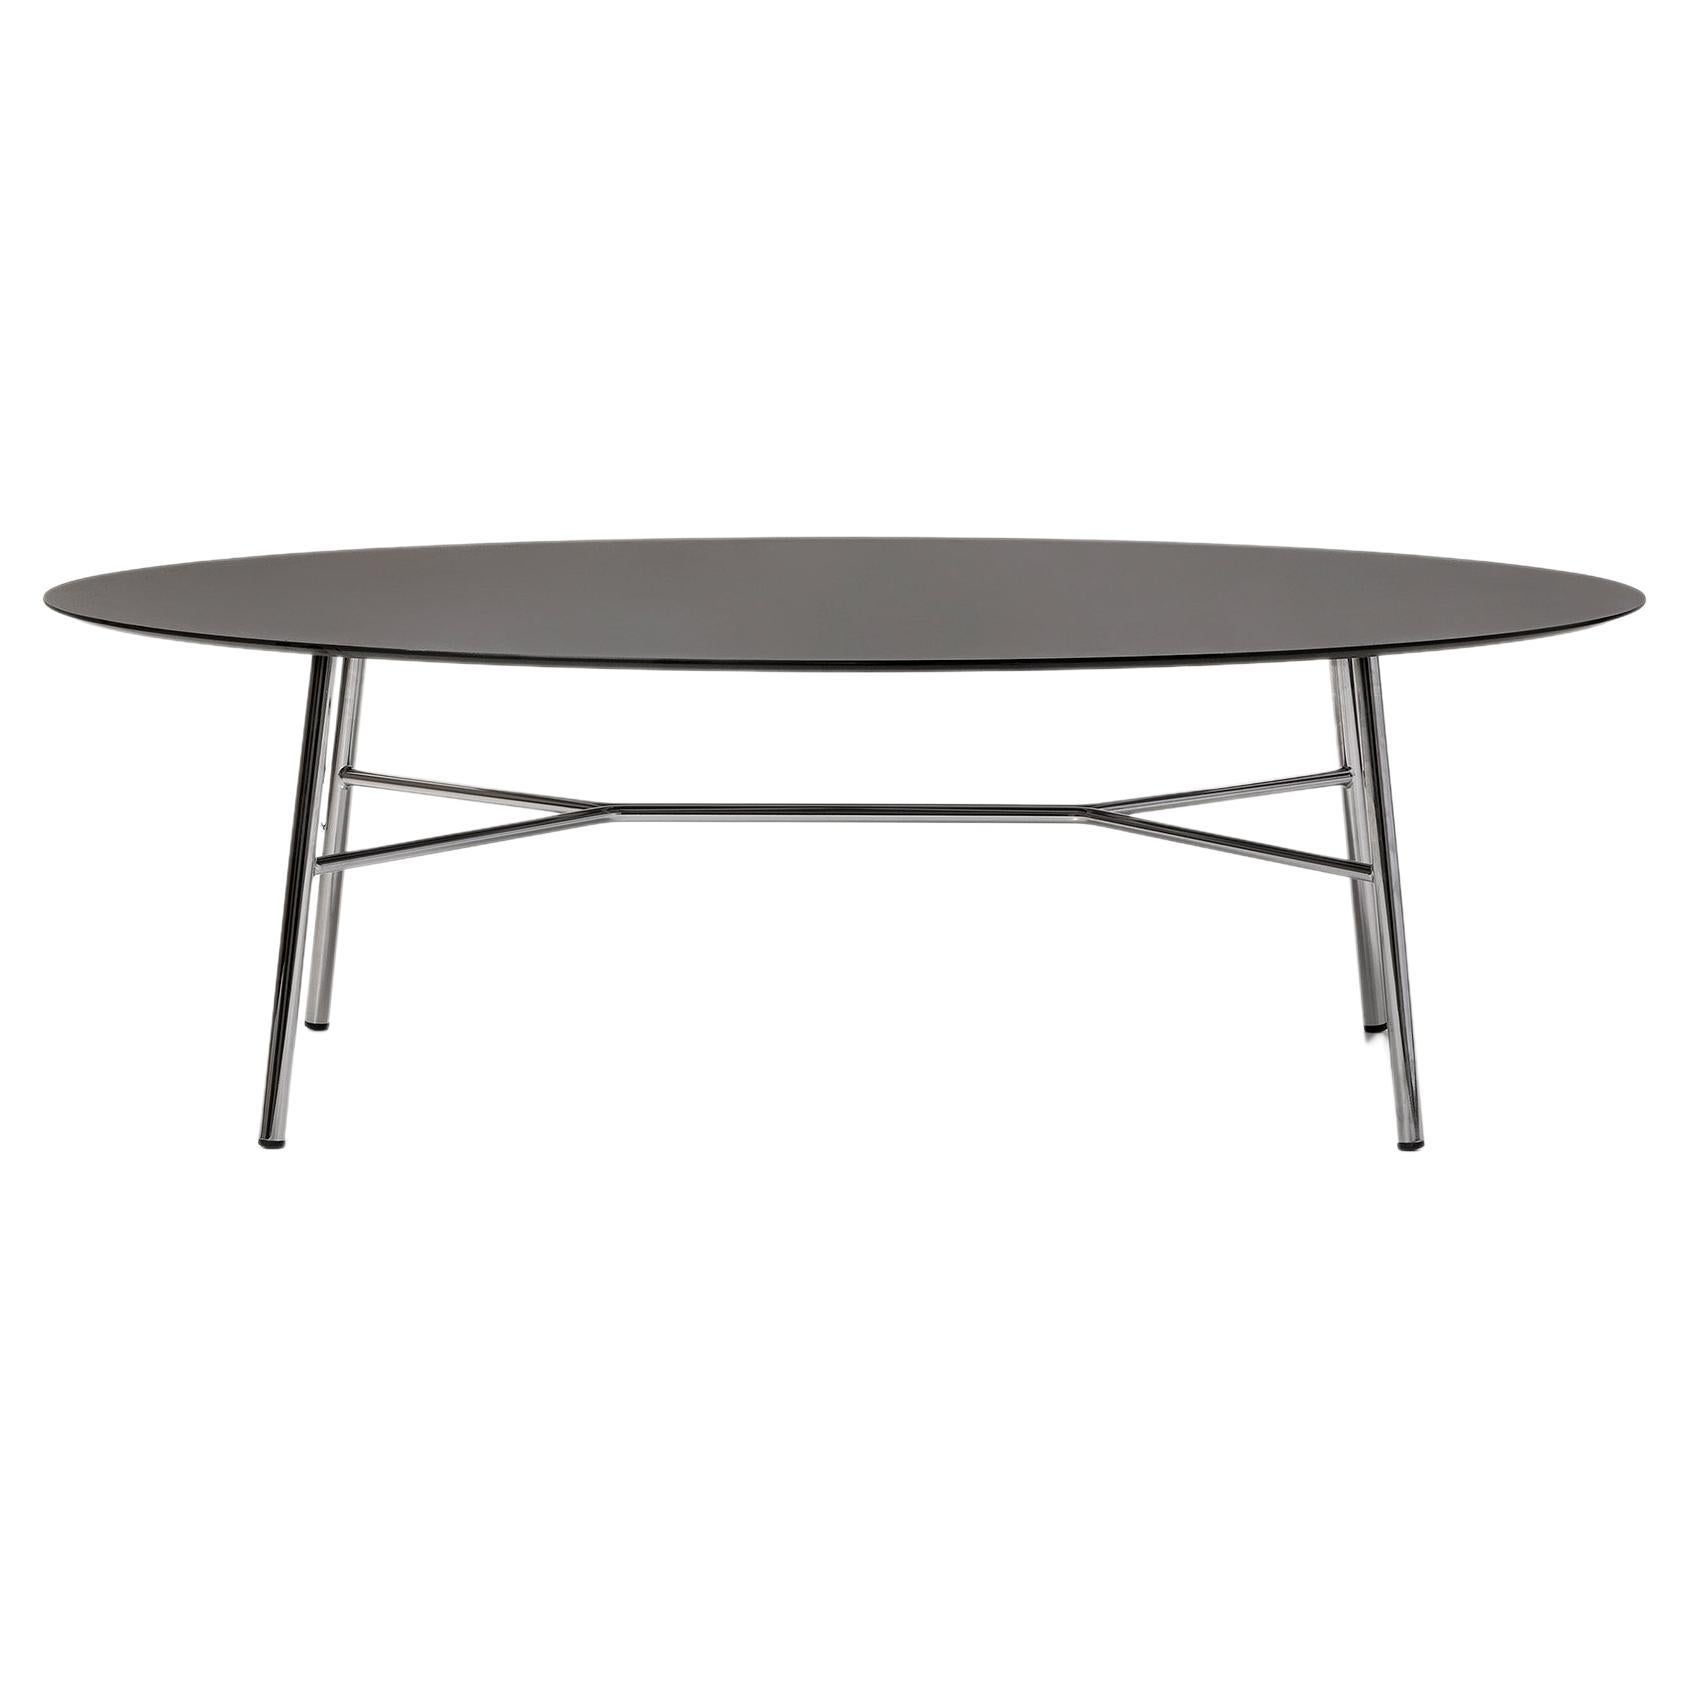 Kleiner Tisch Yuki, Metallrahmen, weiße Farbe, Design, Couchtisch, Glas, Ovale